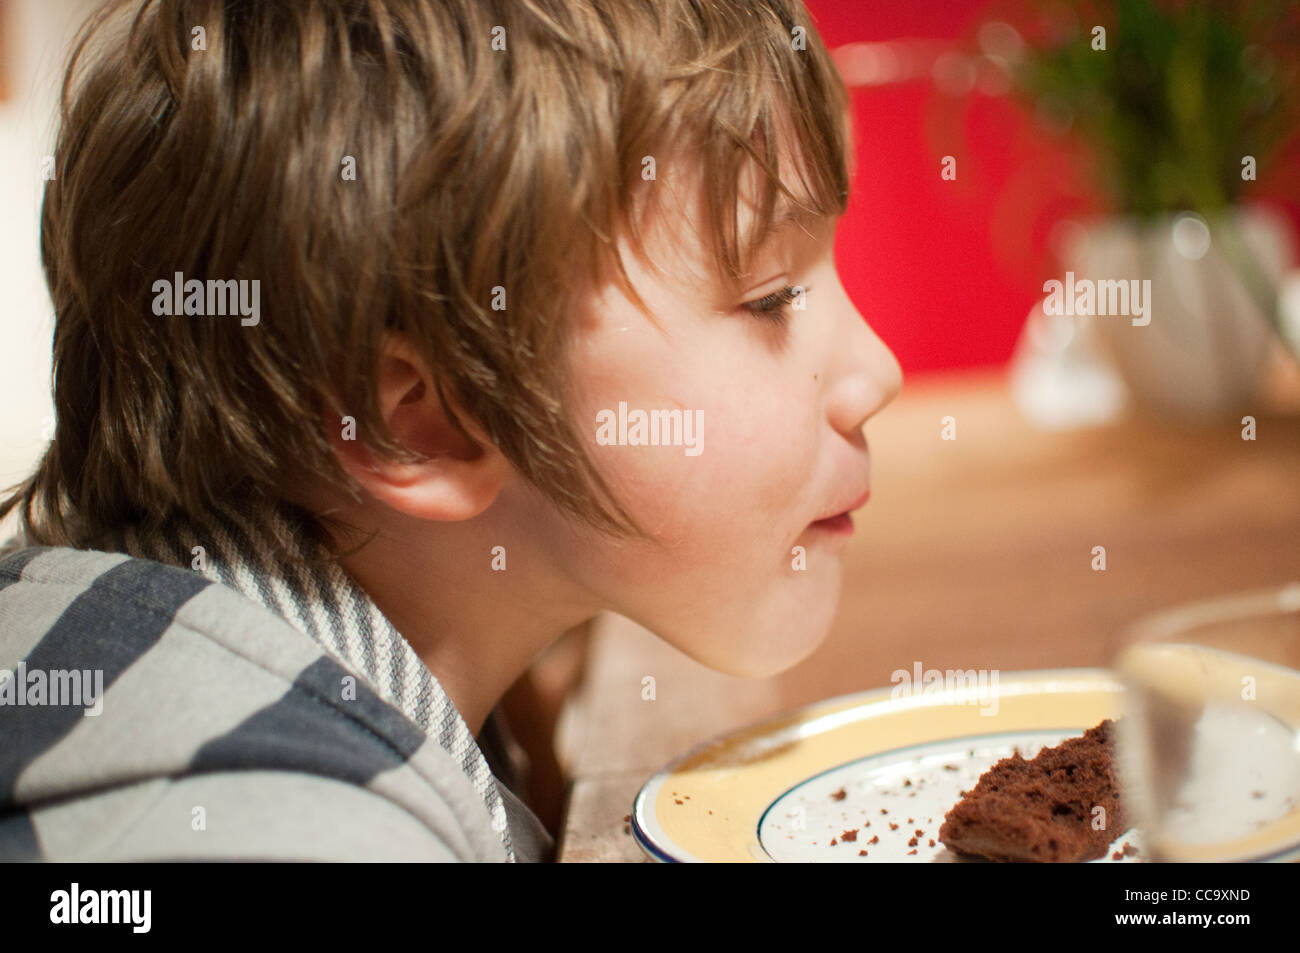 Les jeunes professionnels garçon assis à la table en train de manger un morceau de gâteau au chocolat Banque D'Images